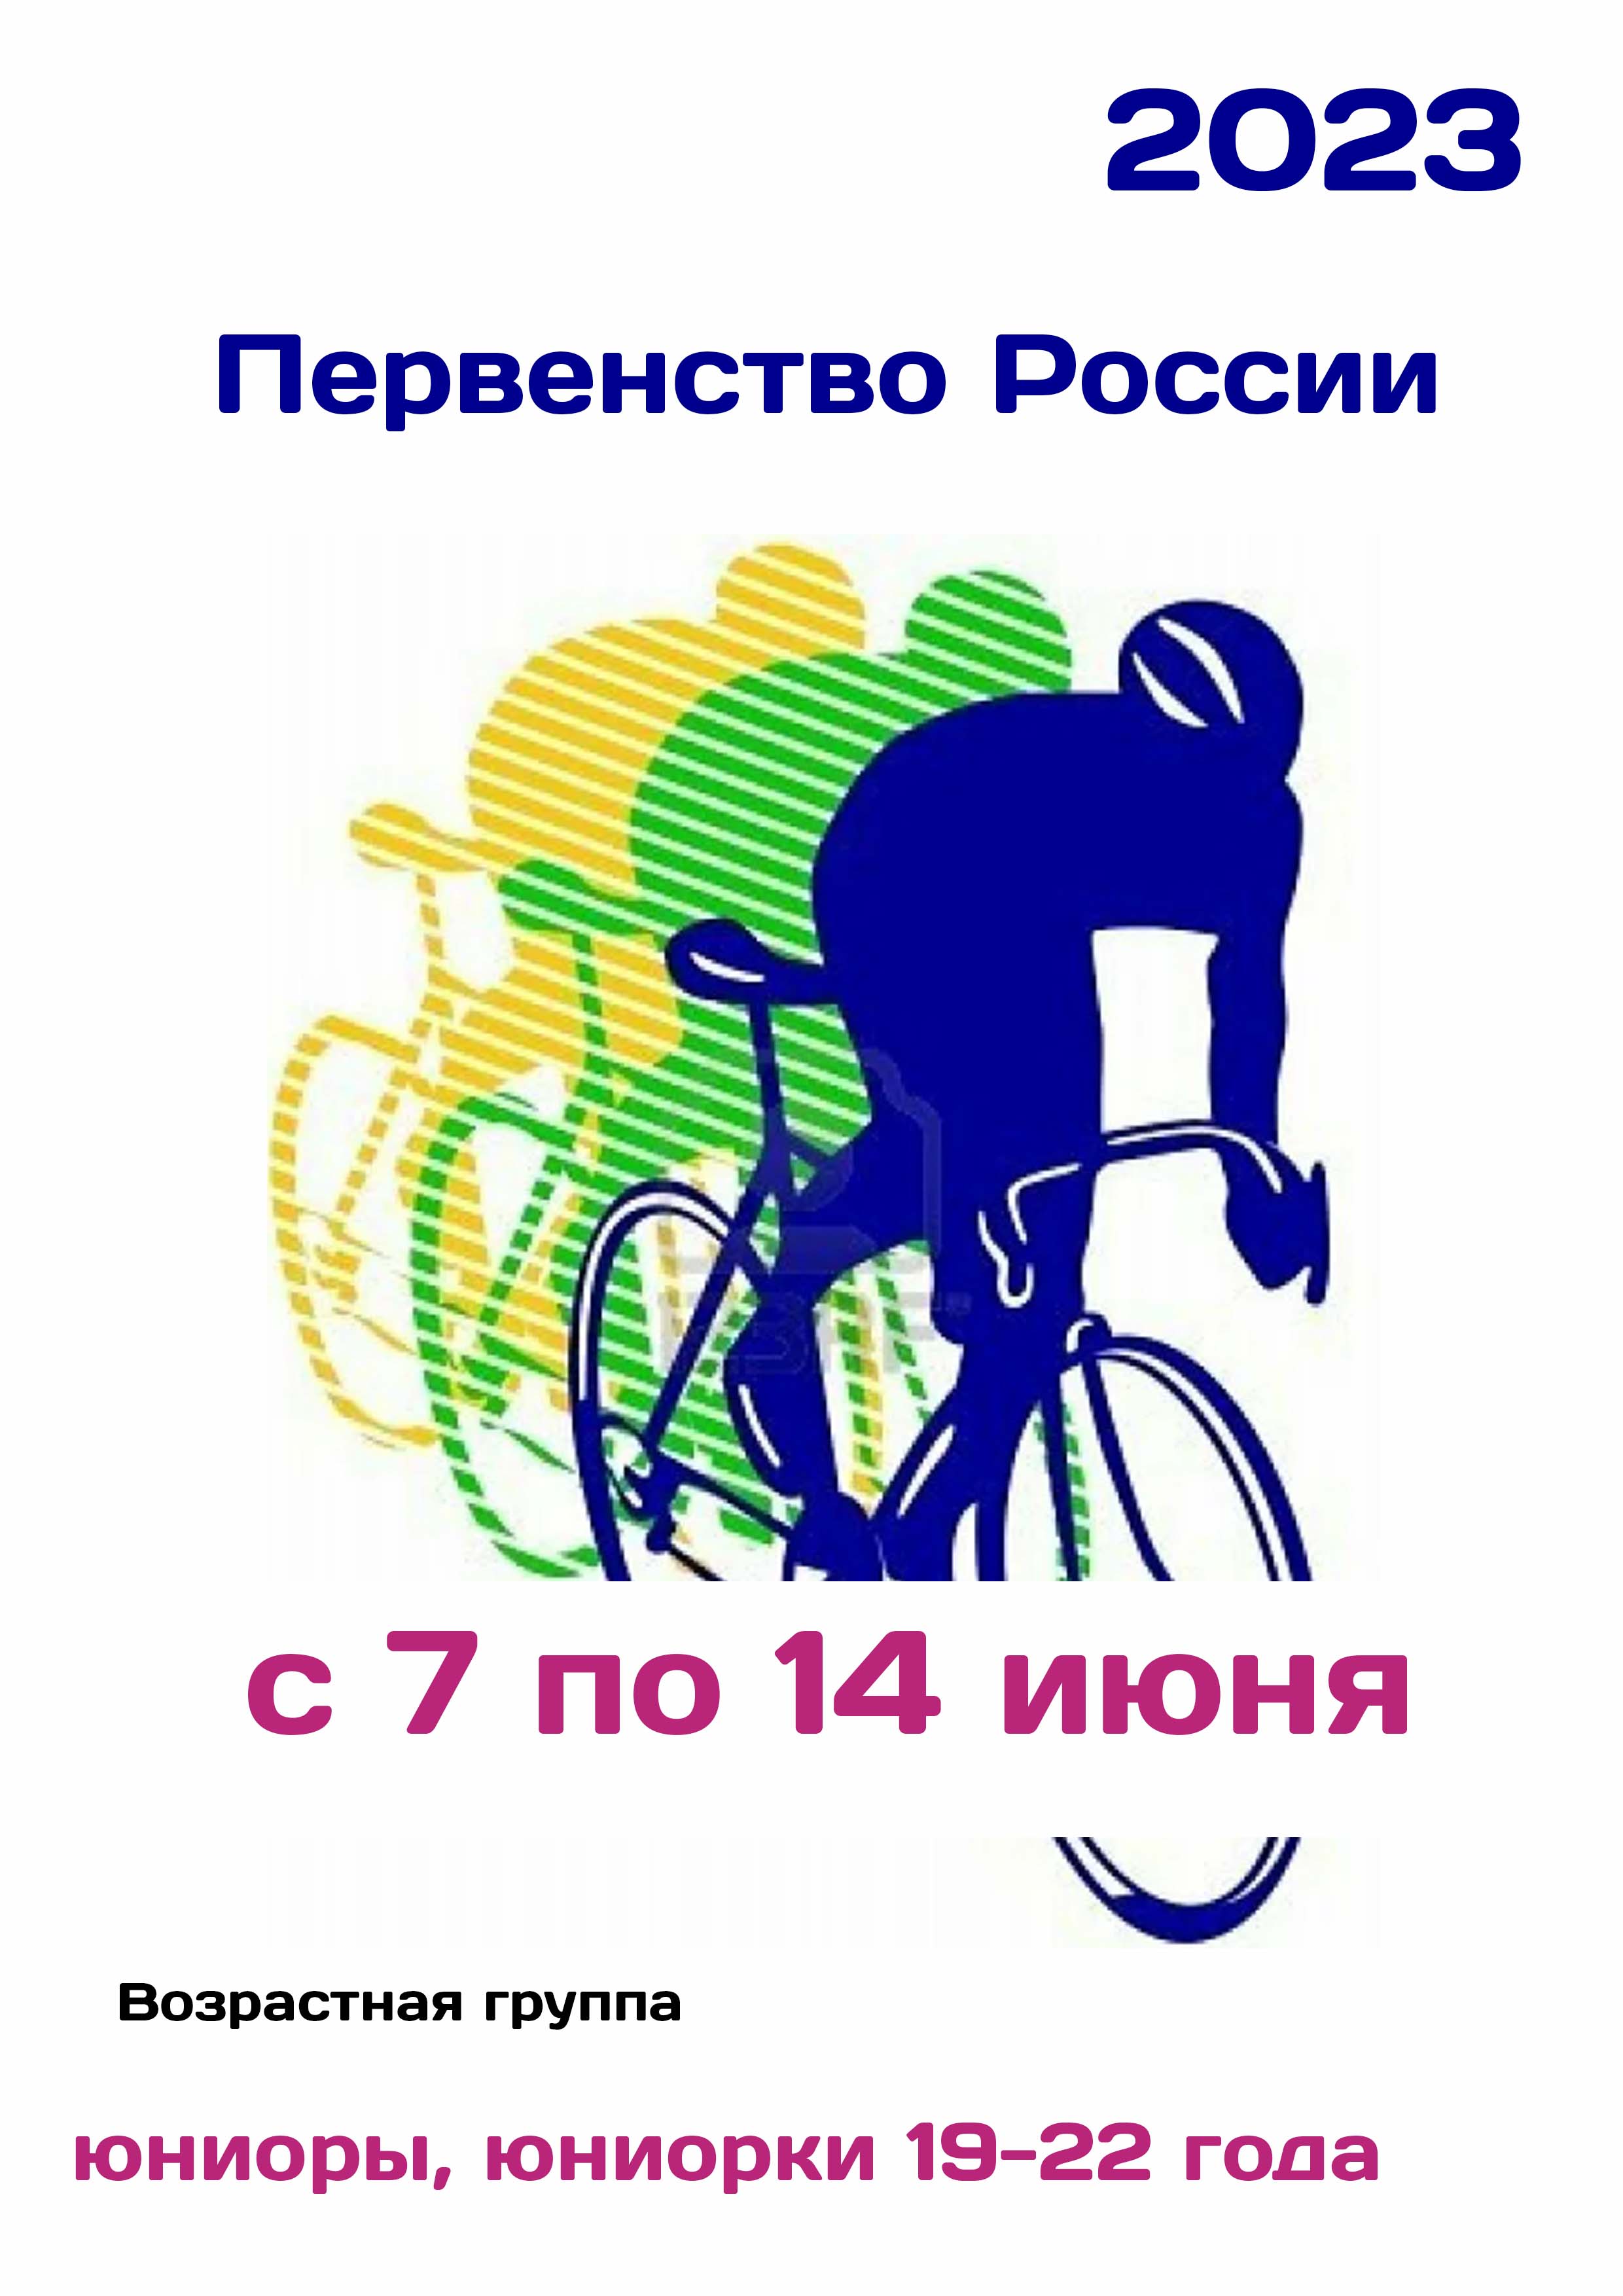 Первенство России по велоспорту 7  giugno
 2023  anno
 